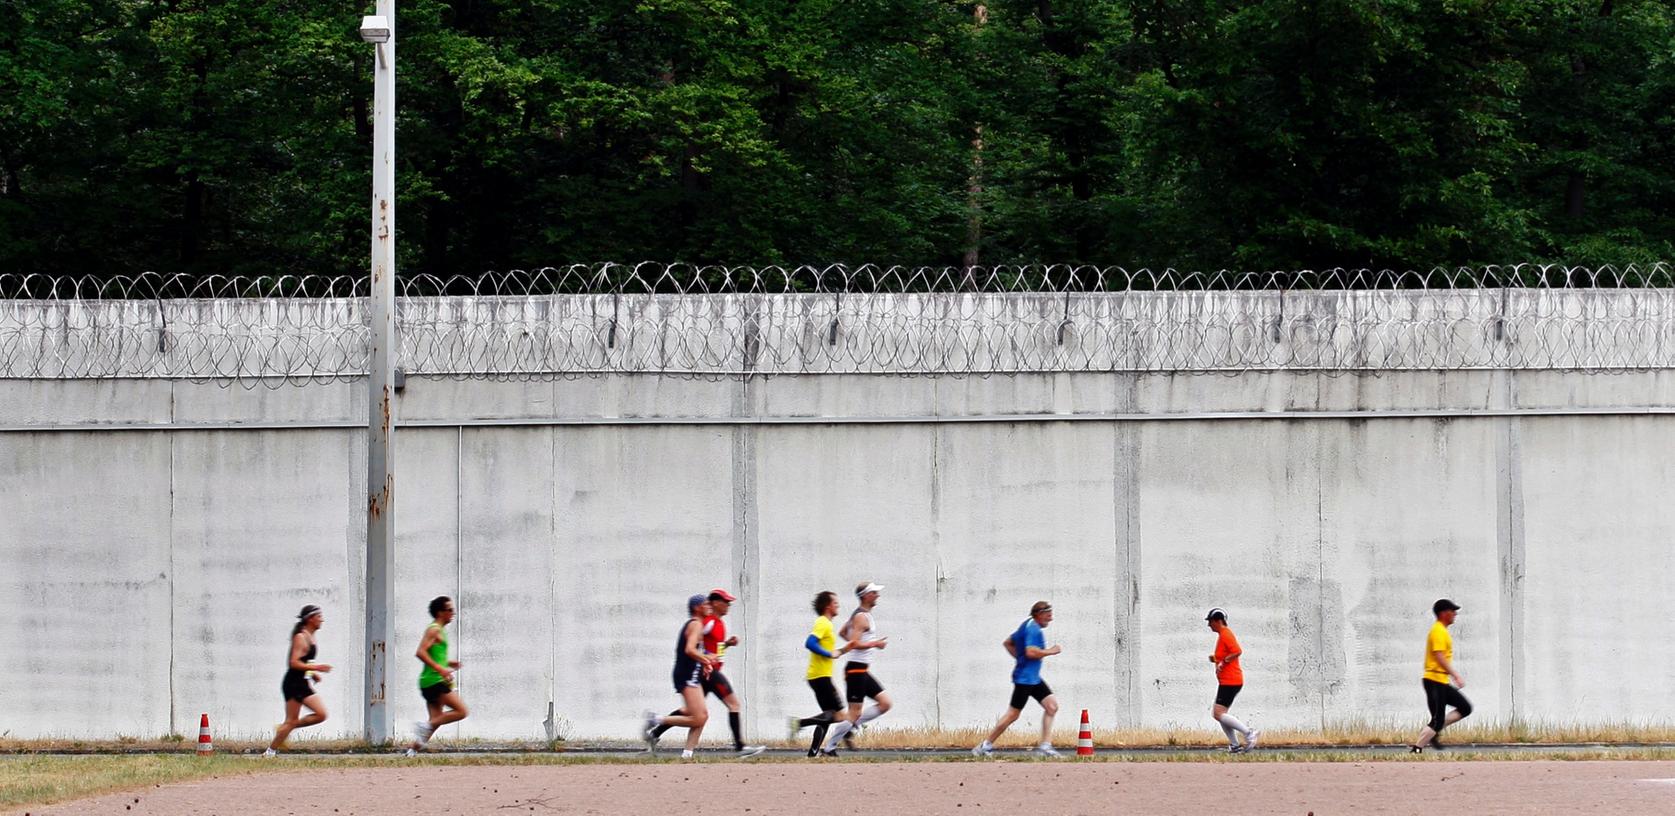 Häftlinge der Justizvollzugsanstalt Darmstadt laufen zusammen mit externen Teilnehmern beim sogenannten "Knastmarathon" auf einem Rundkurs. Die Gefängnis-Fussballmannschaft hätte den wegen Brandstiftung verurteilten Ex-Bayern-Profi Breno gerne als Verstärkung.